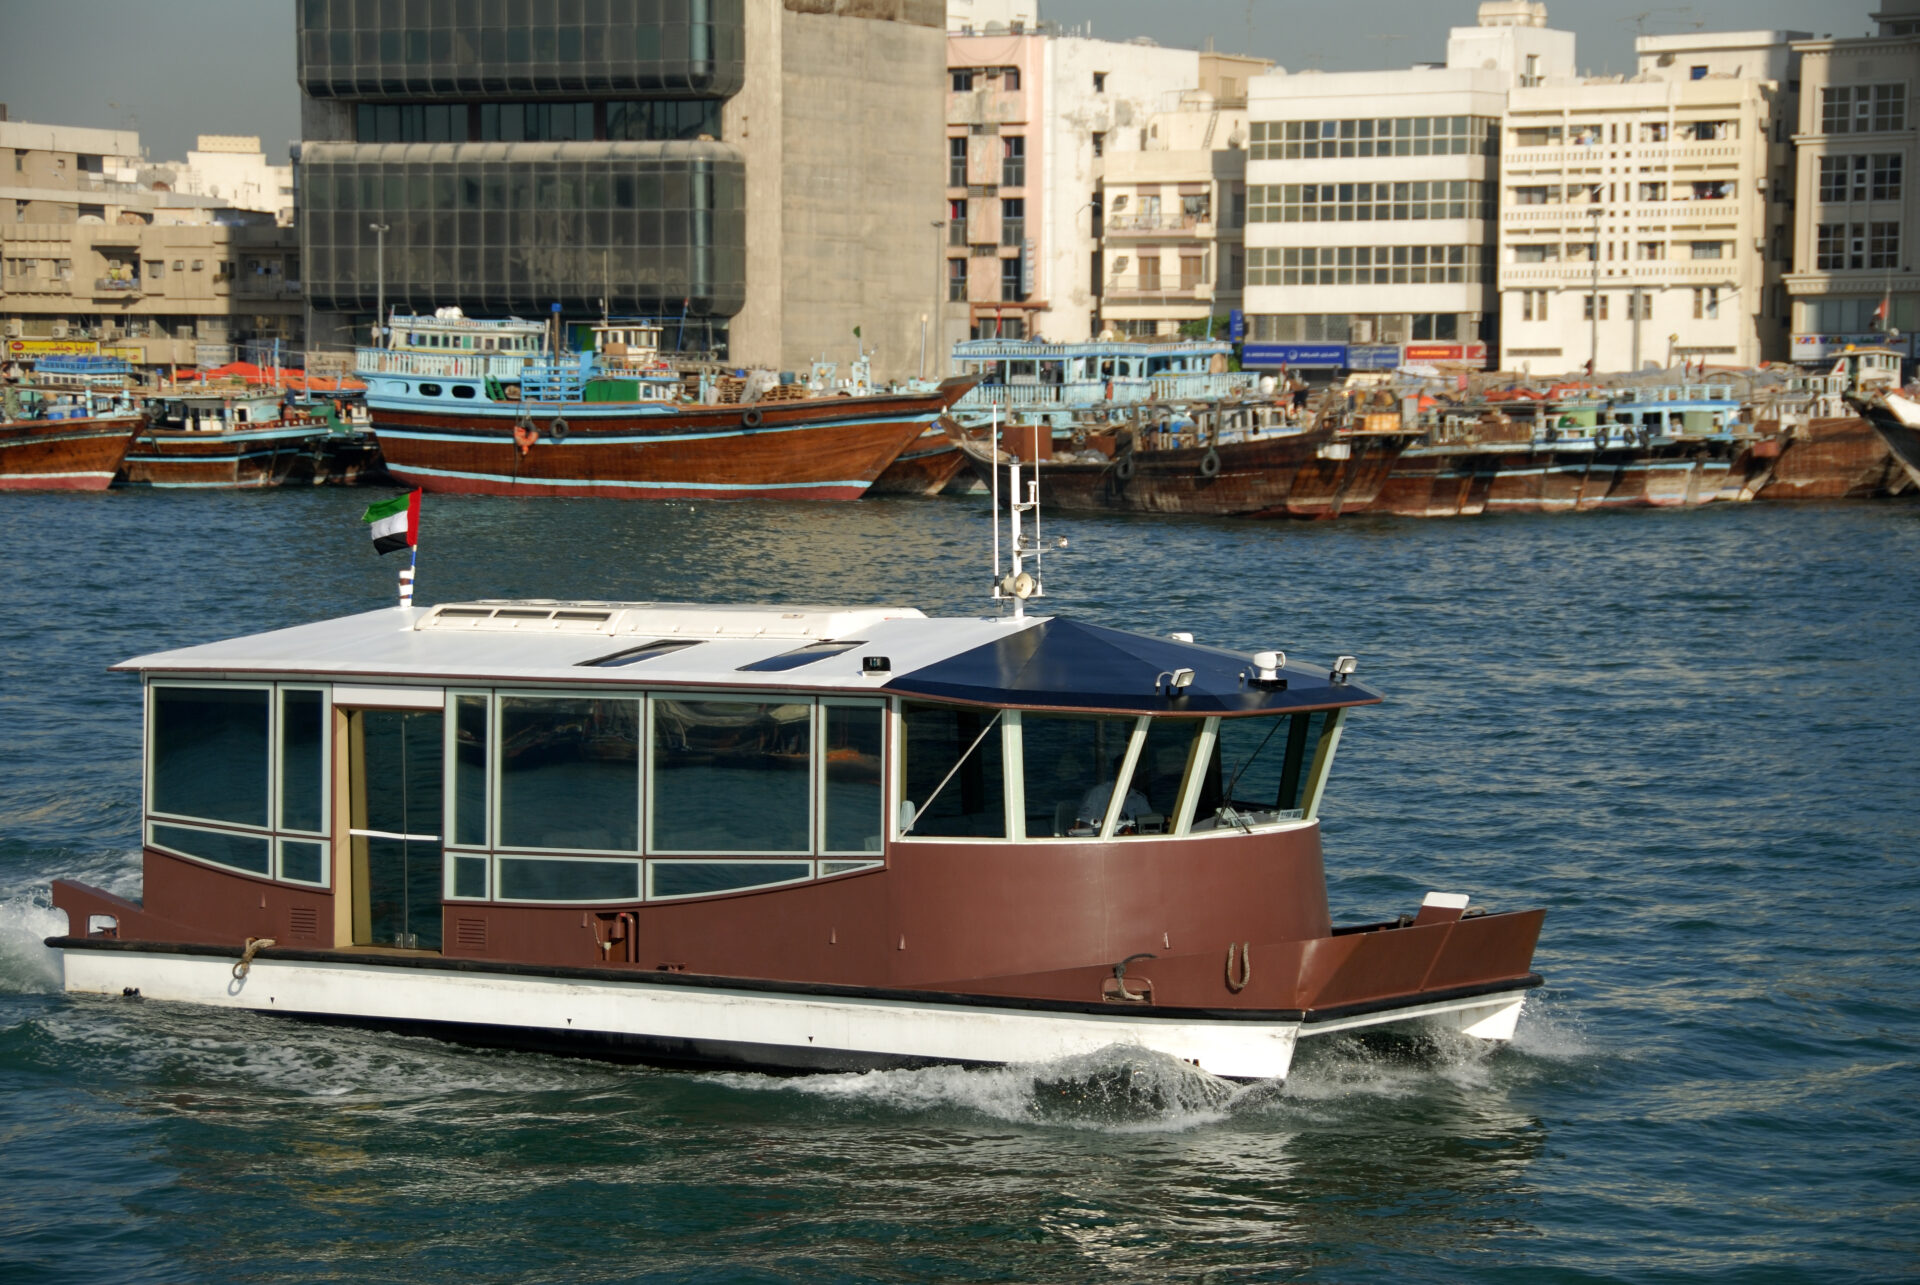 Dubai Water Bus - Brown RTA boat